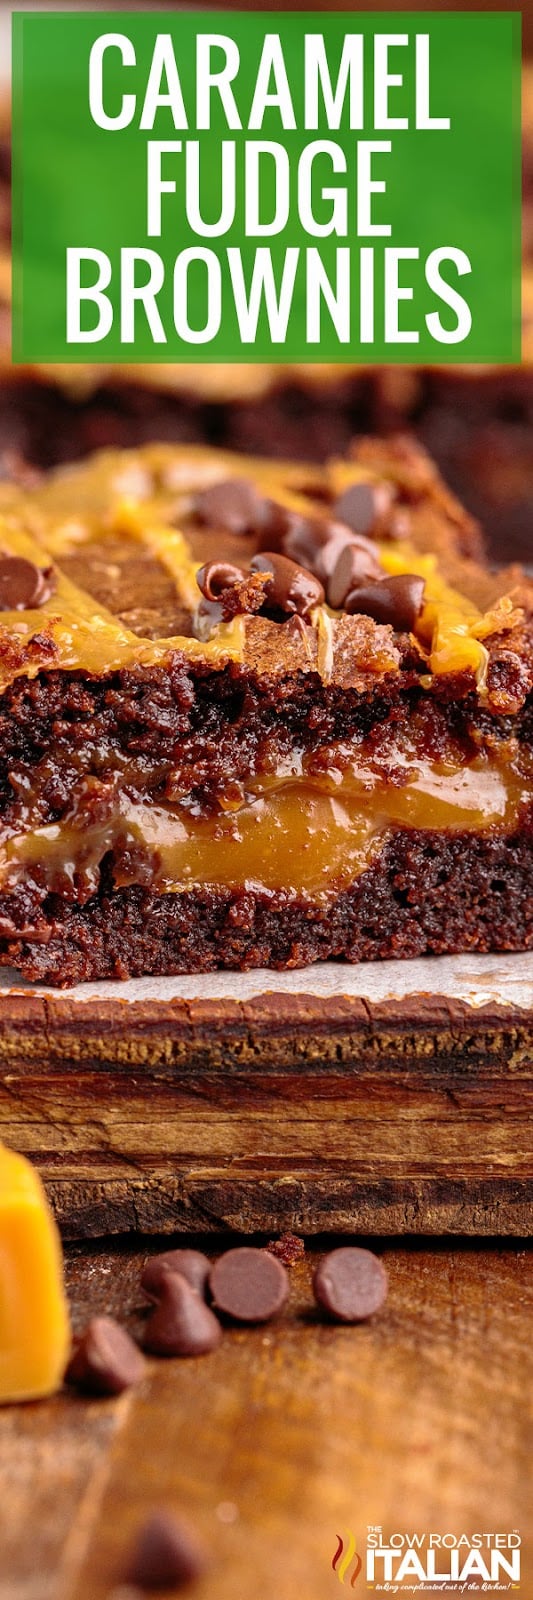 Caramel Fudge Brownies closeup